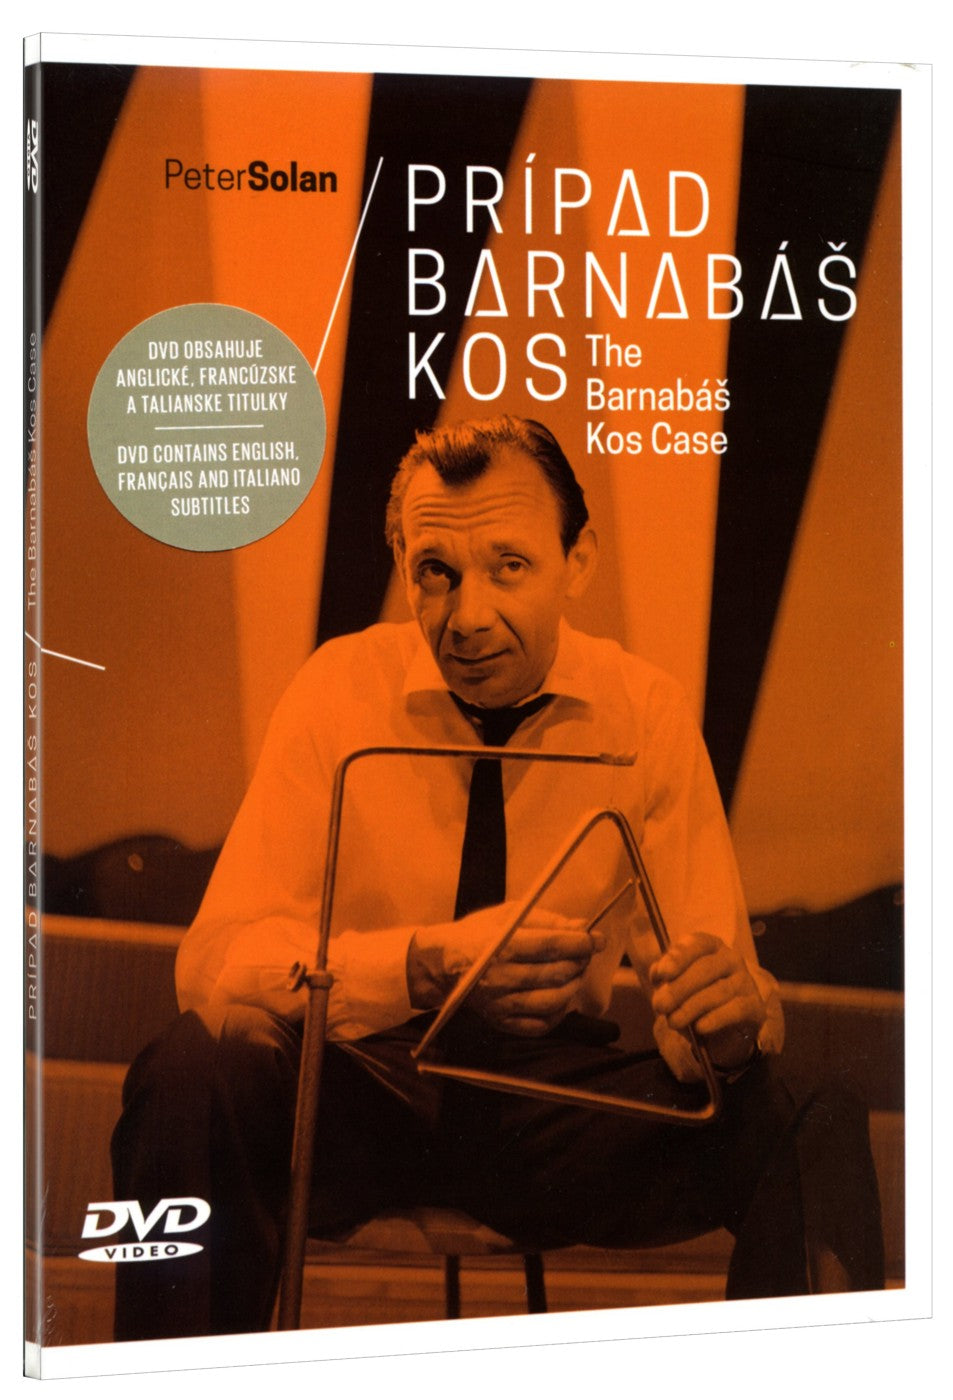 The Barnabas Kos Case / Pripad Barnabas Kos